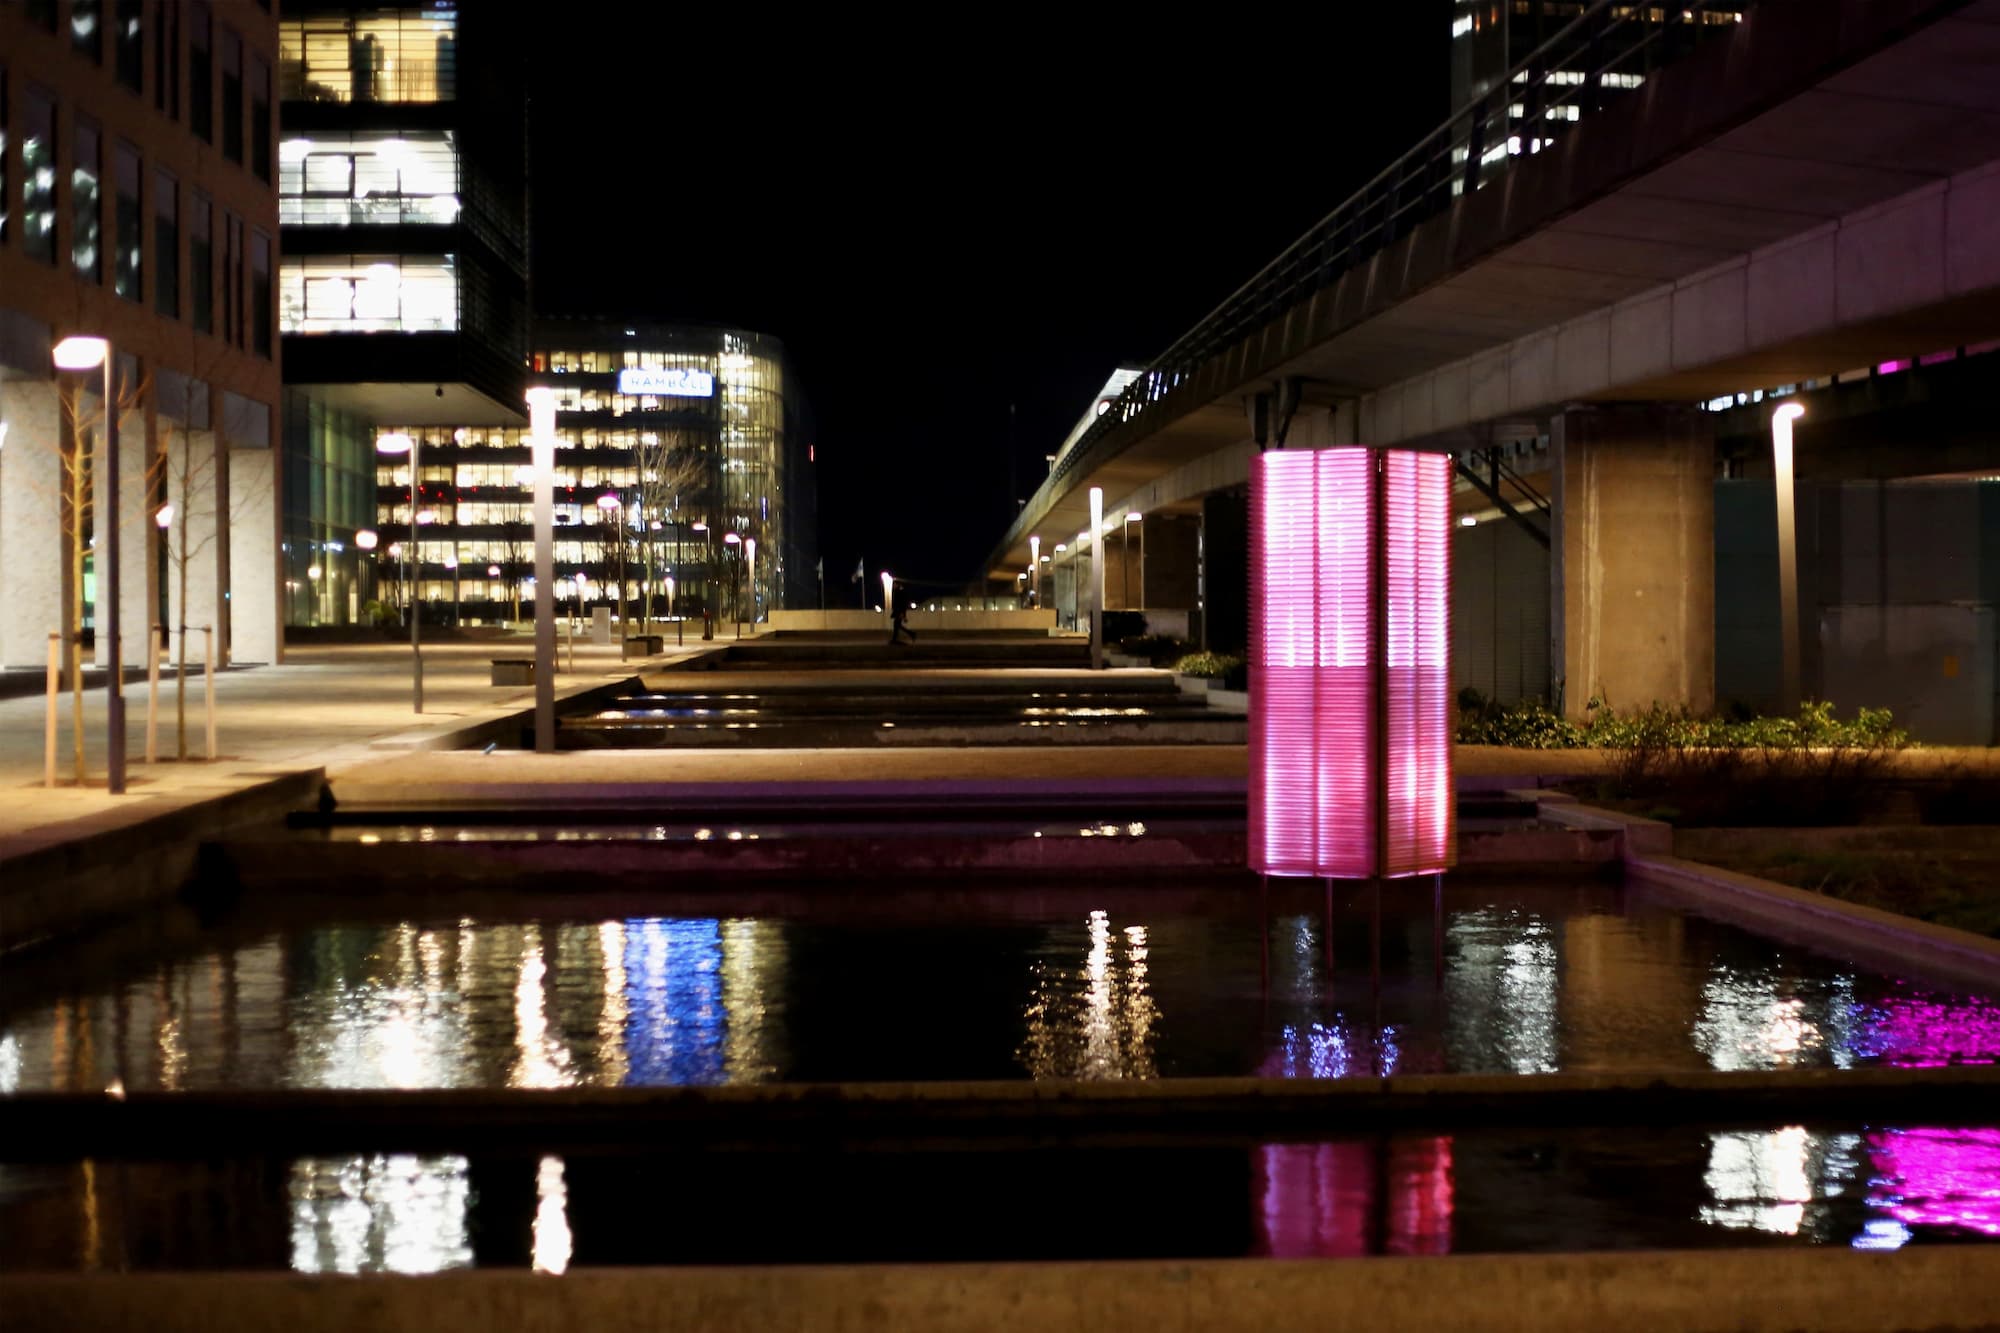 Værket 'The Stack' er skabt af den københavnske kunstergruppe Circuit Circus og er en rektangulær lysskulptur, som står i vandet og skaber smukke genspejlinger.